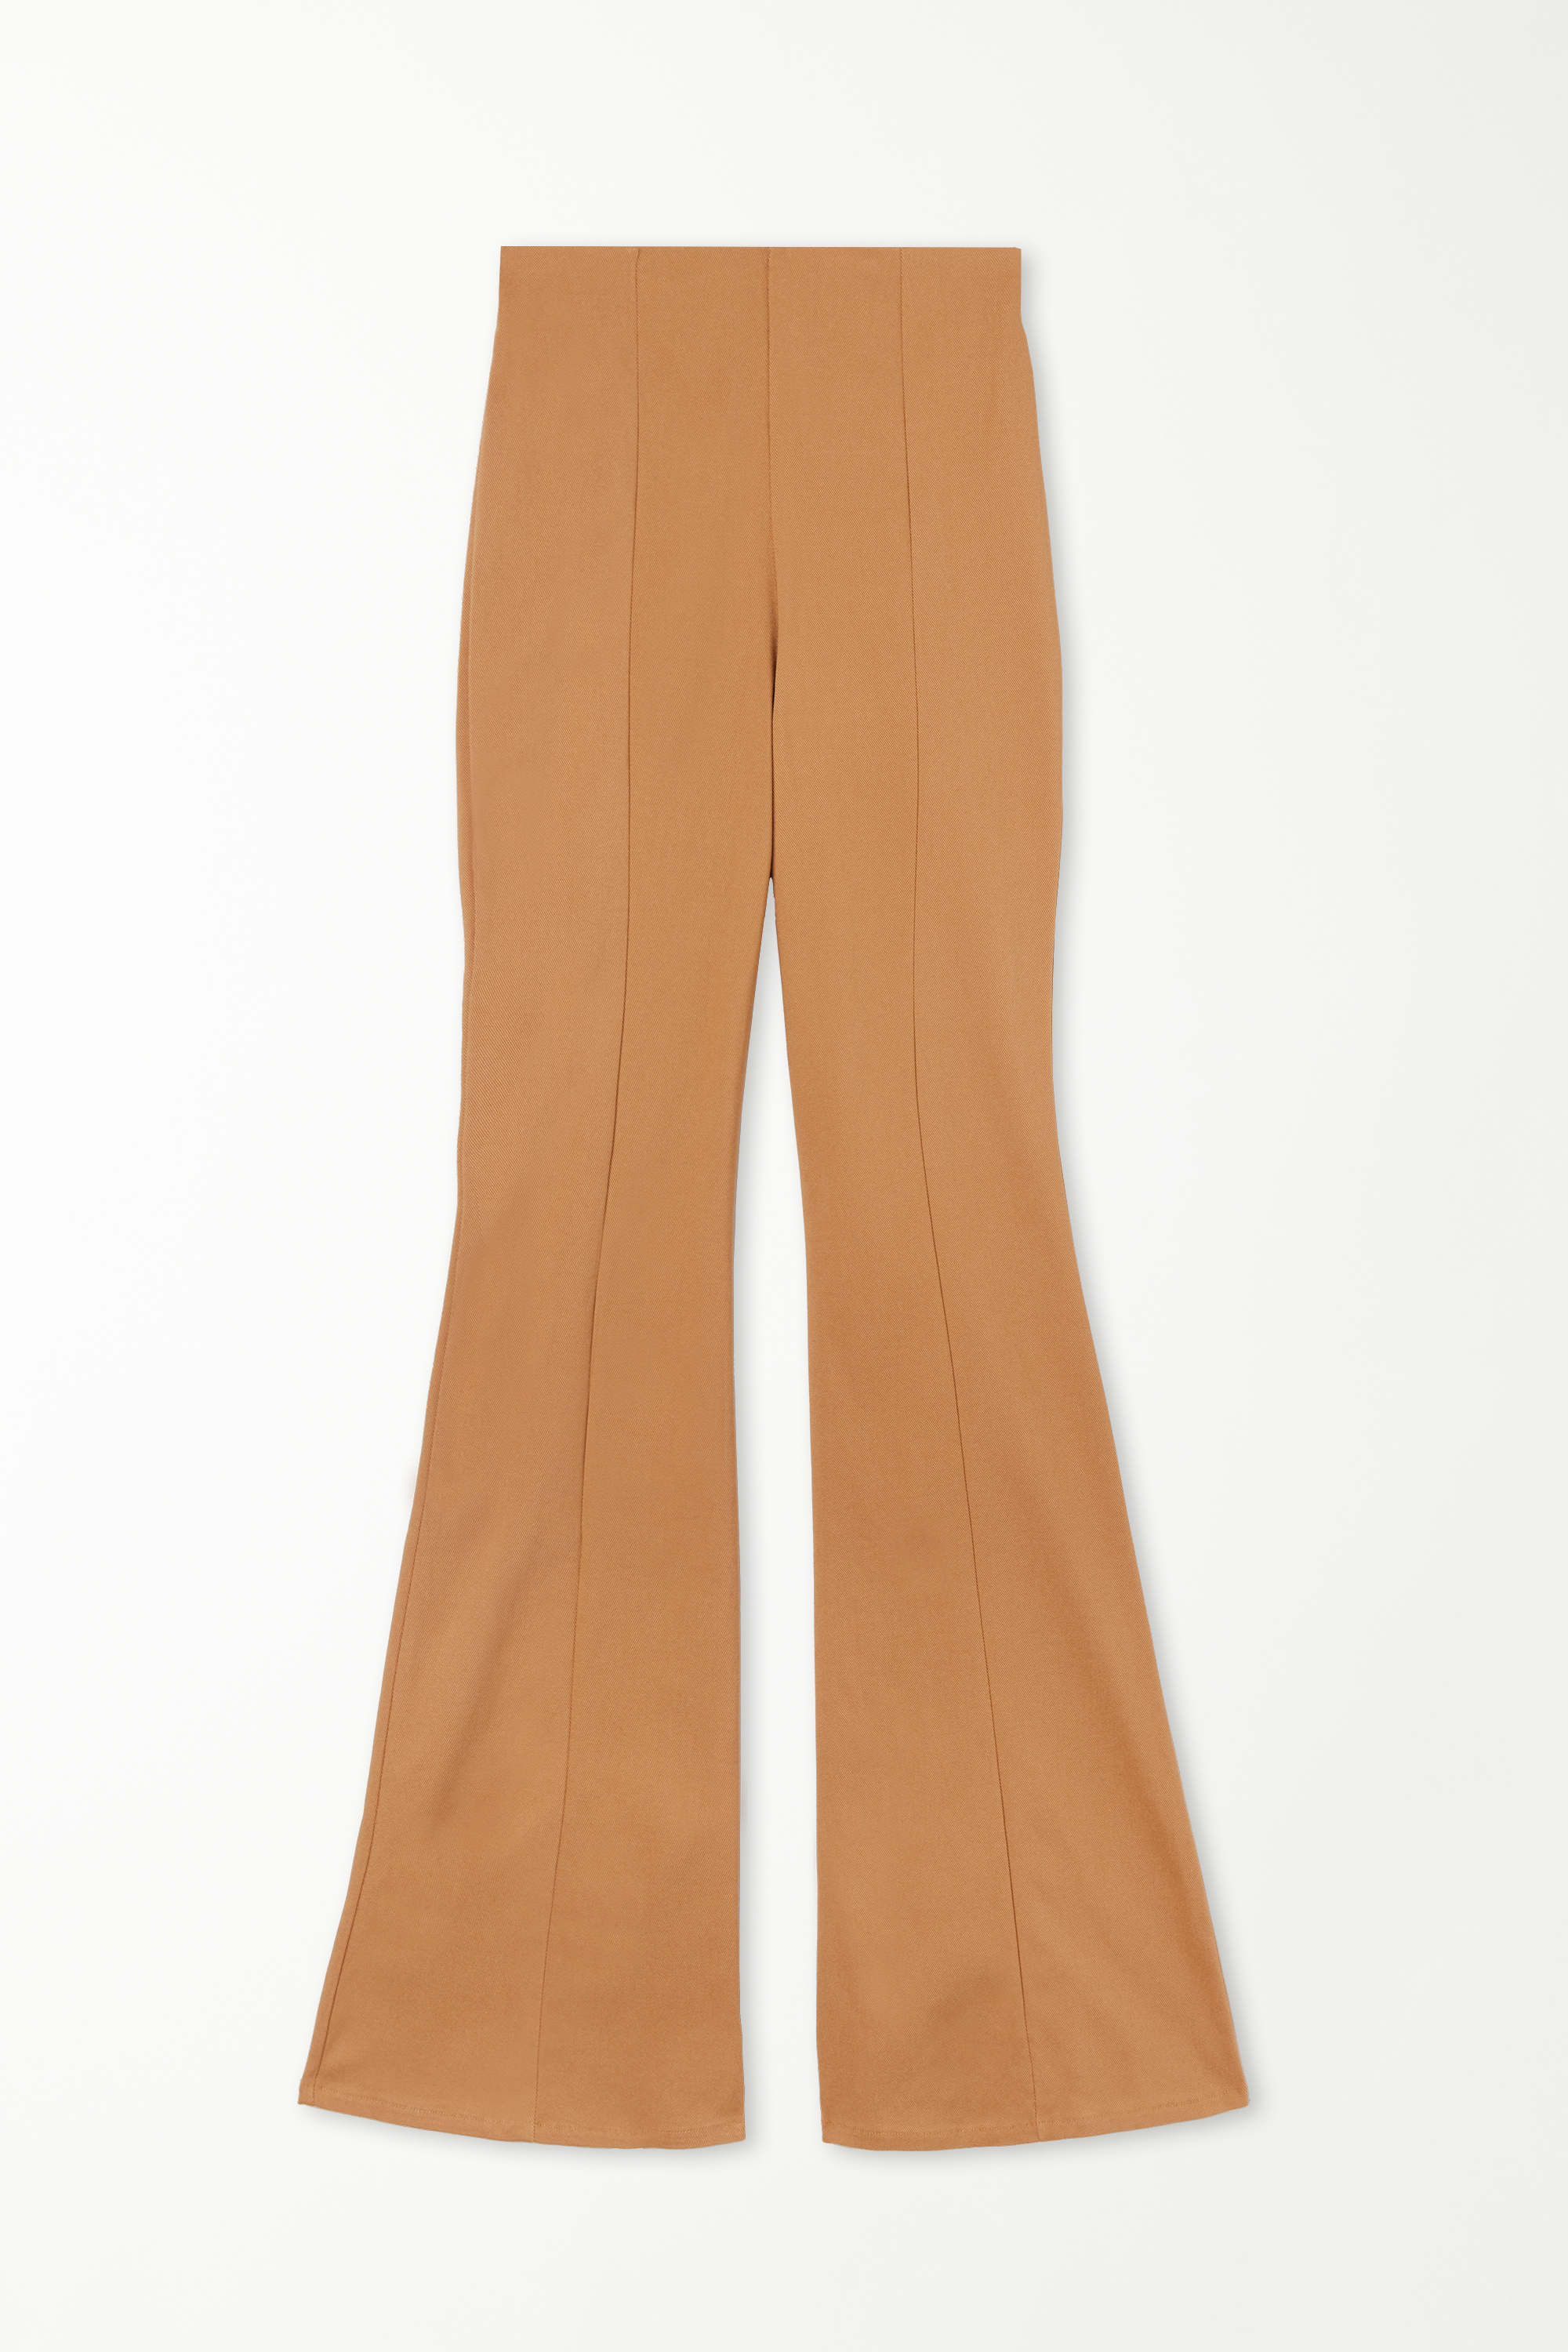 Flare-Cut Stretch Fabric Capri Pants